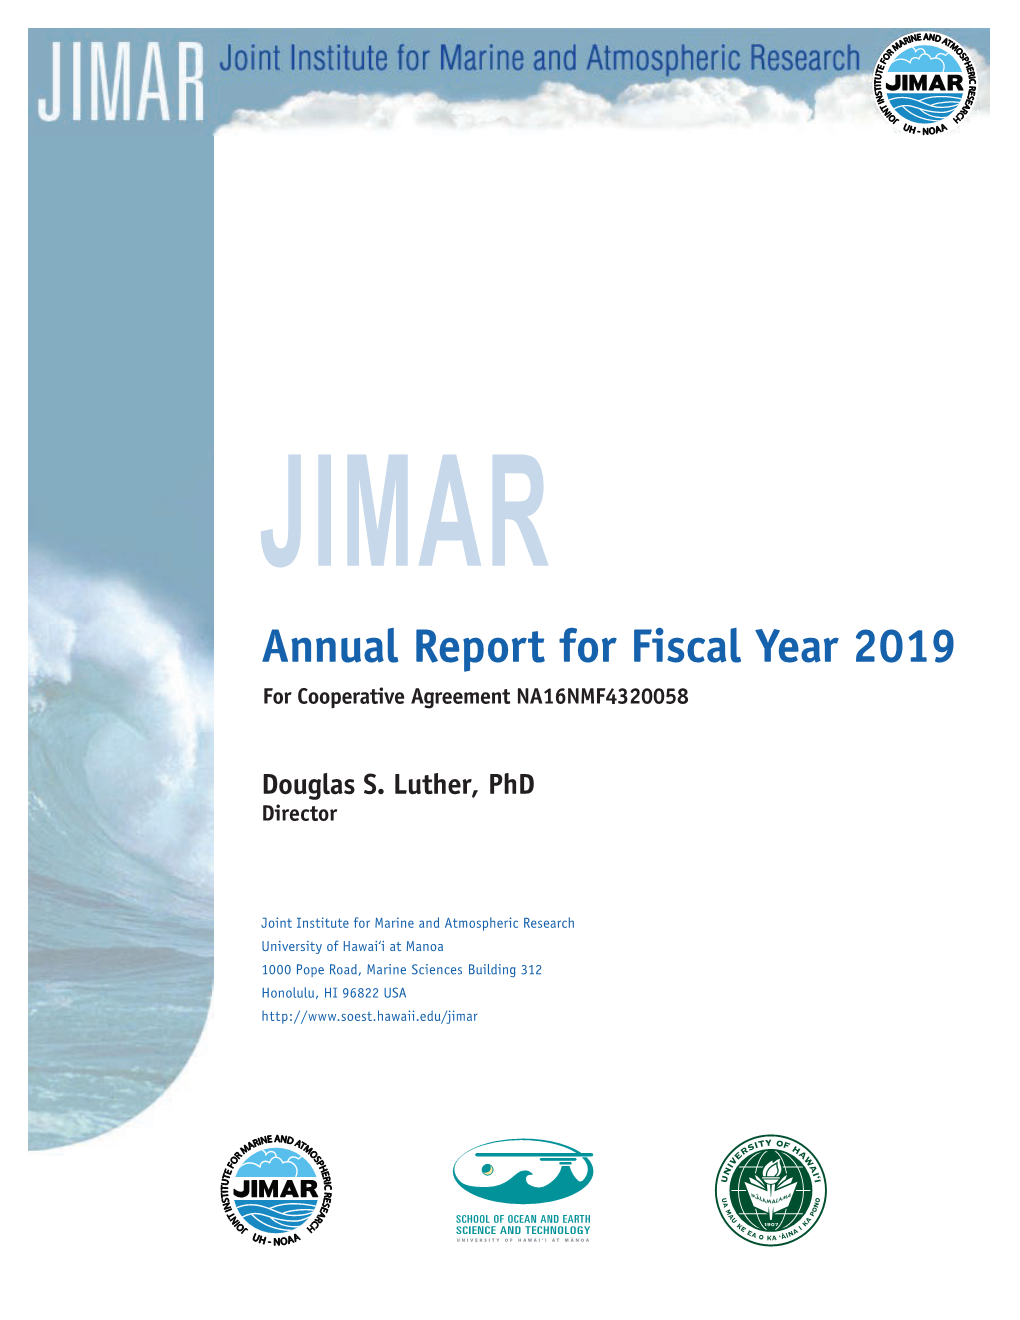 JIMAR 2019 Annual Report